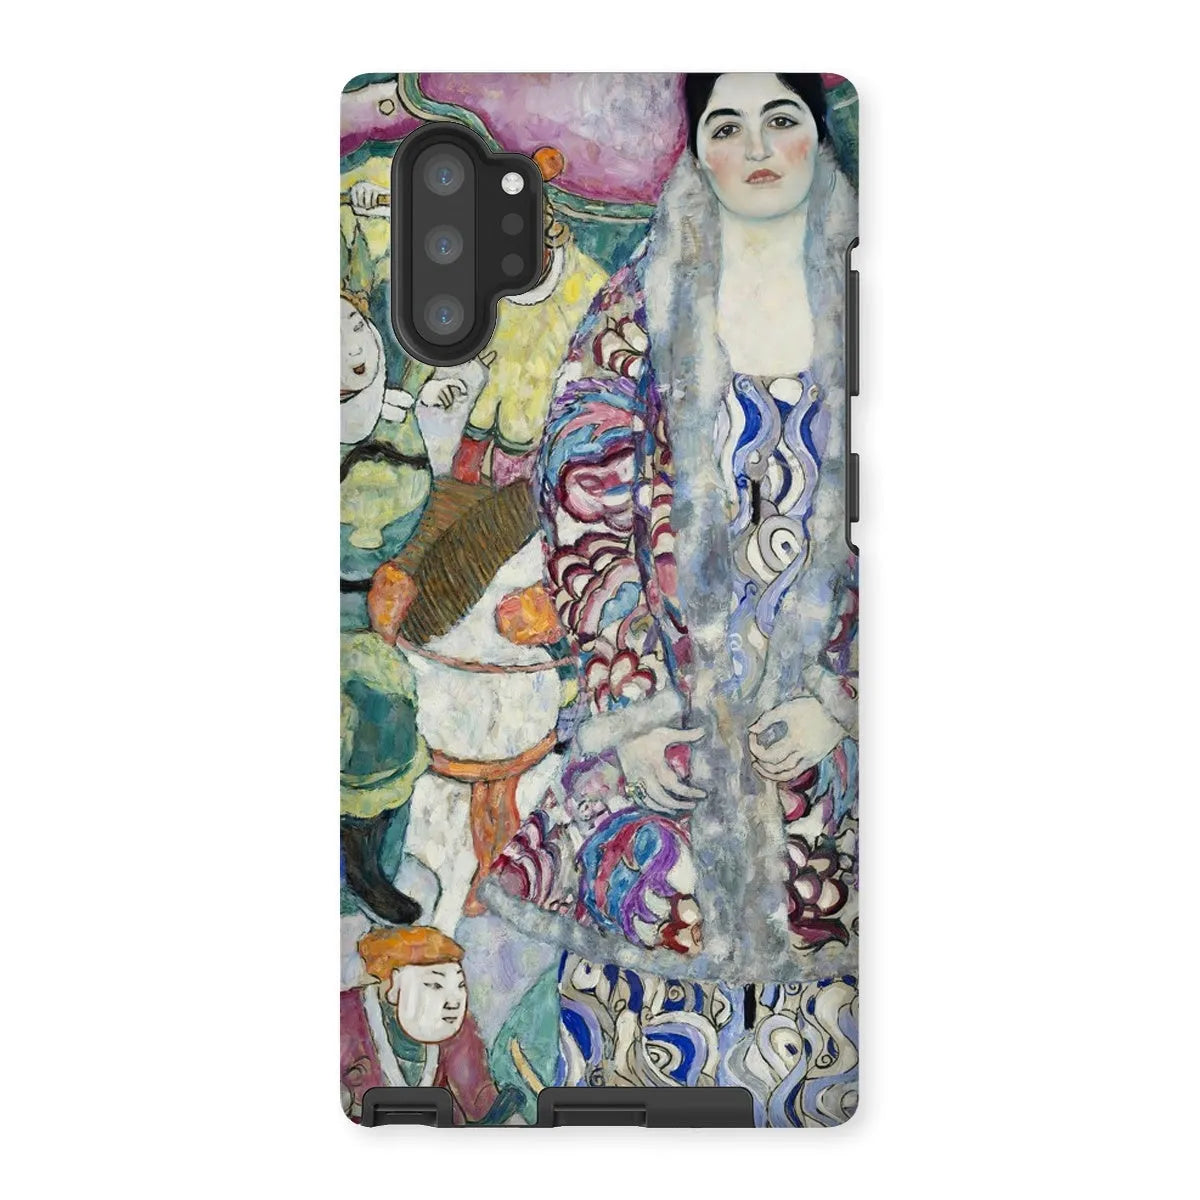 Friederike Maria Beer - Viennese Art Phone Case - Gustav Klimt - Samsung Galaxy Note 10p / Matte - Mobile Phone Cases